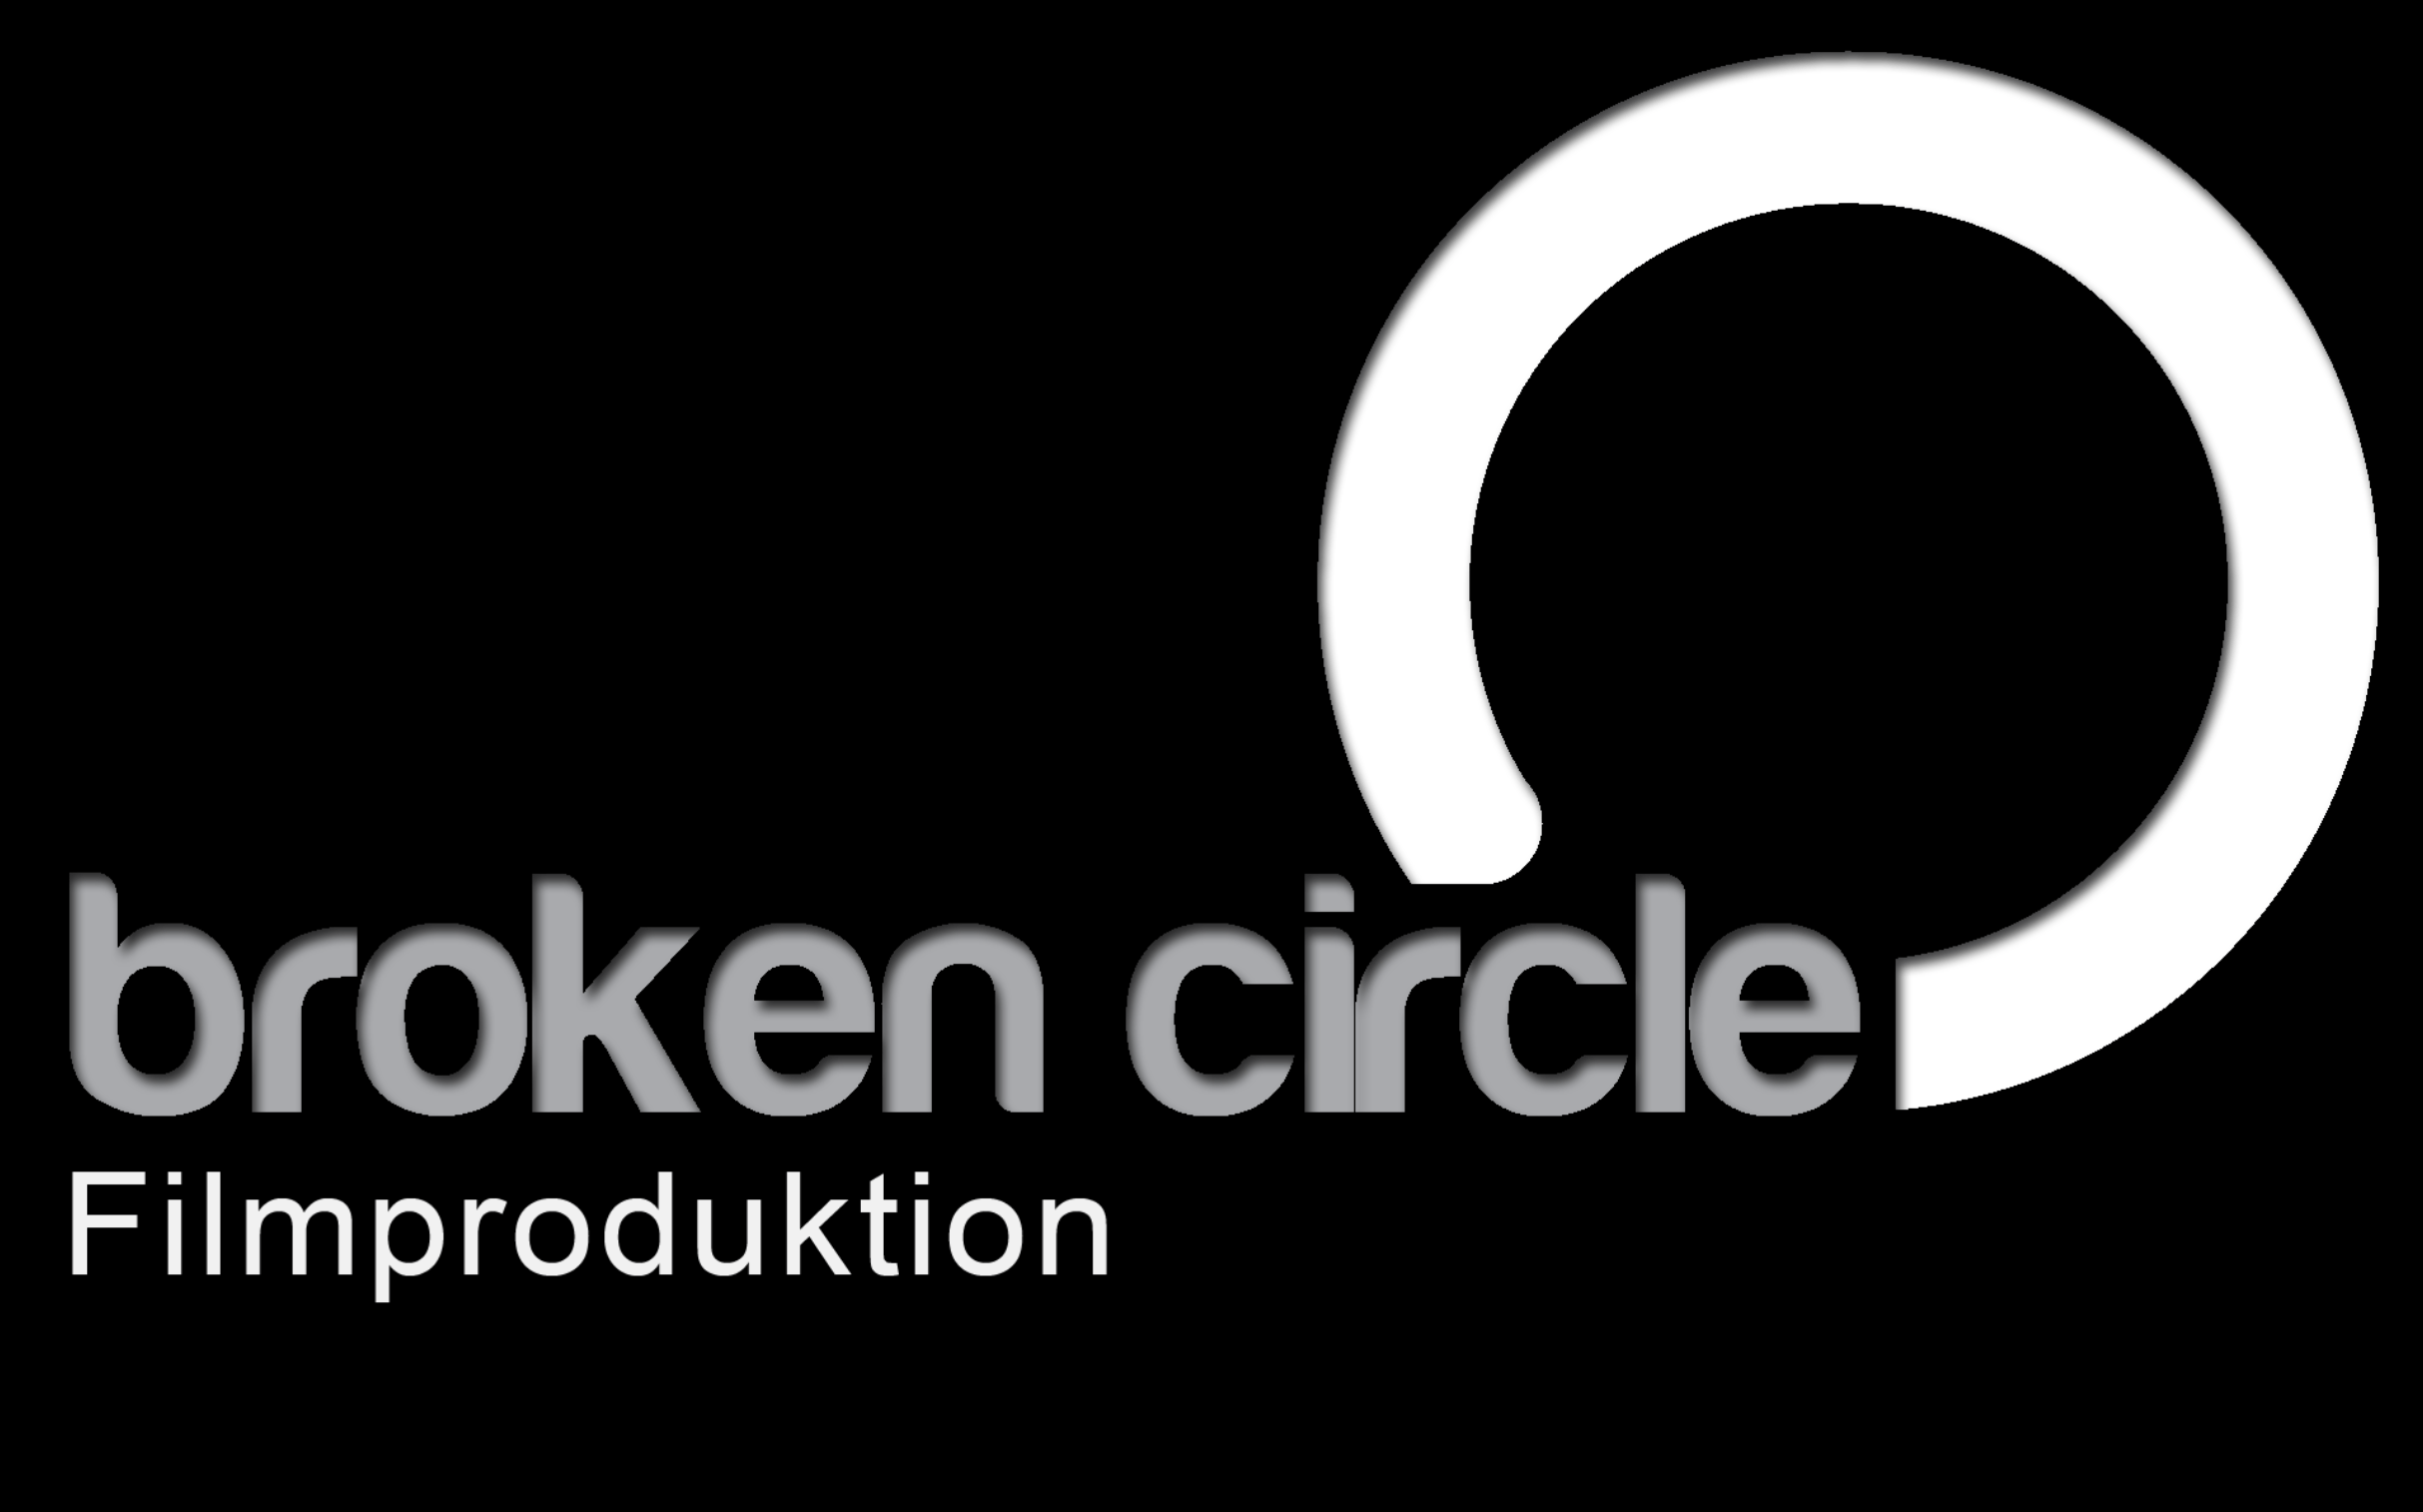 Broken Circle Logo - Broken Circle logo